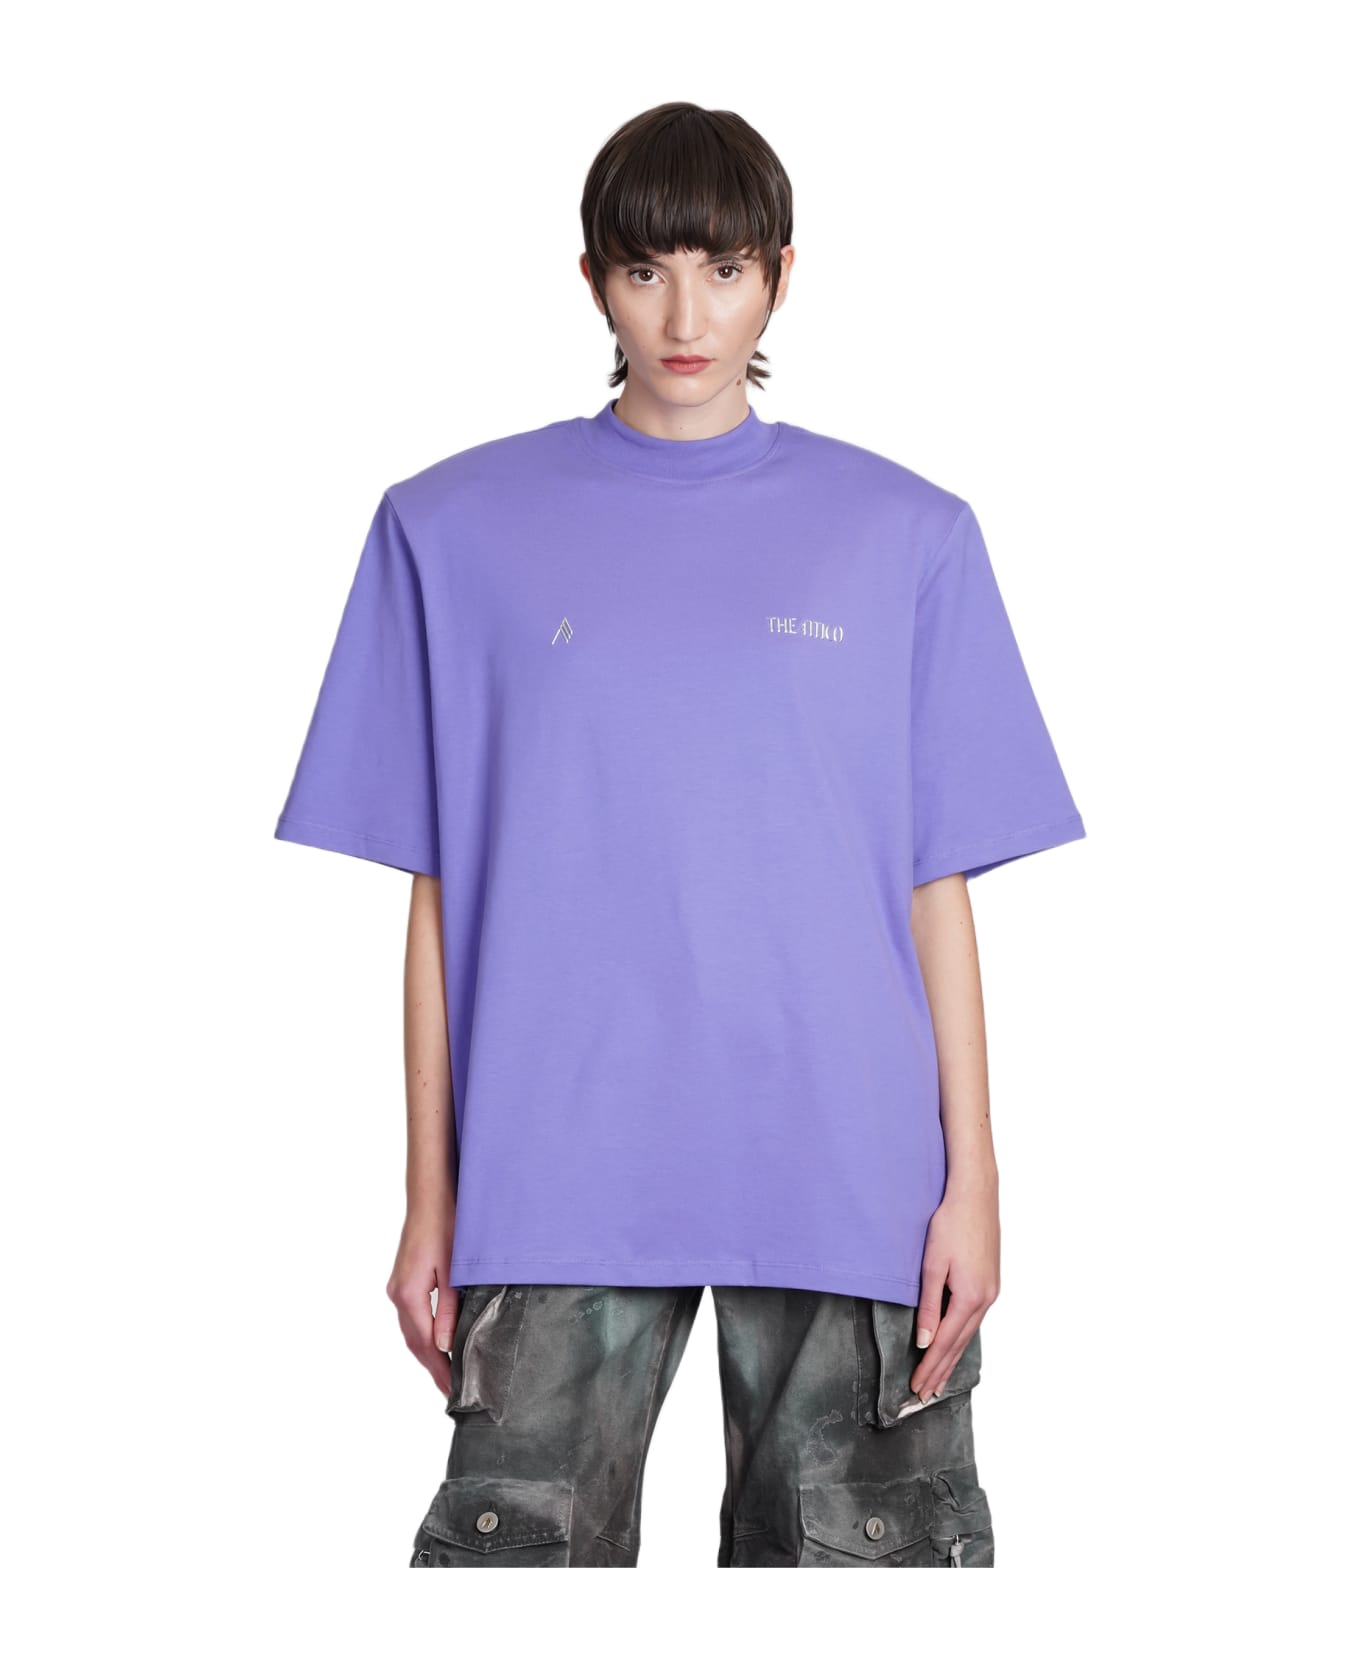 The Attico Purple Cotton Oversize Kilie T-shirt - Purple